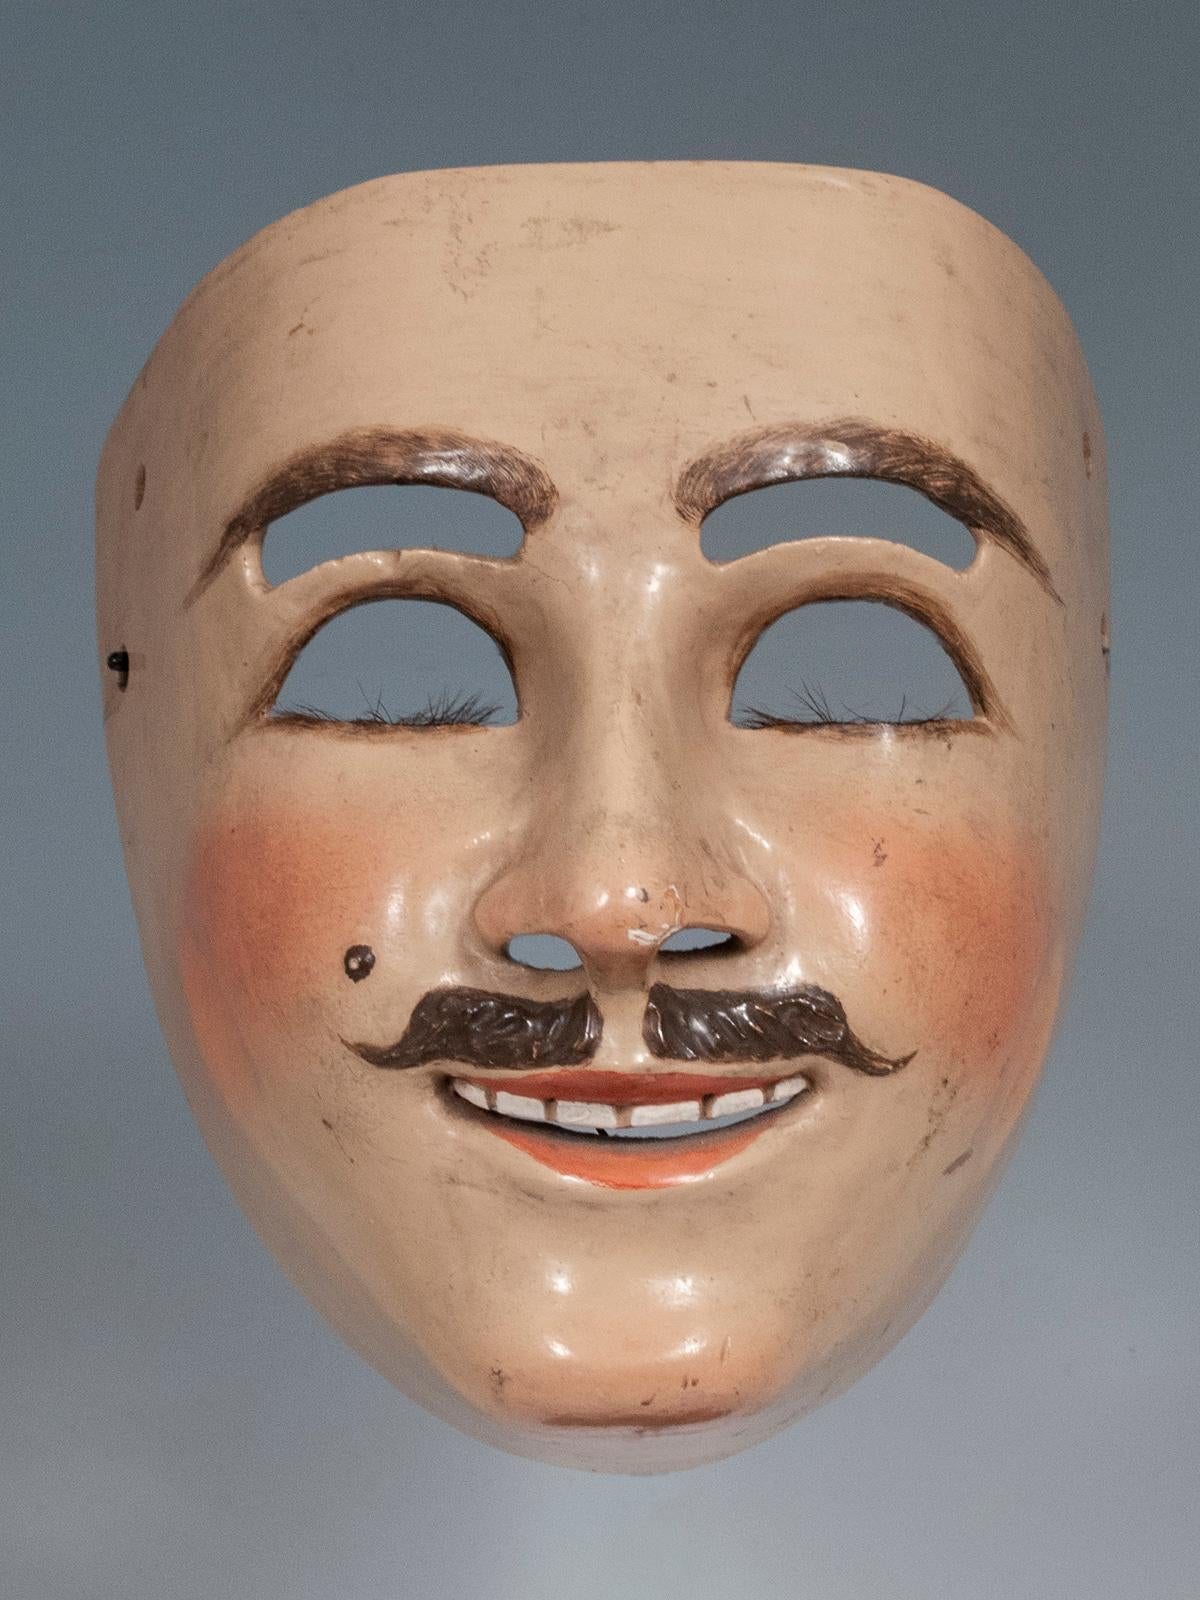 Catrin (Dandy) Maske
Nahua-Volk, Tlaxcala, Mexiko
Holz, Gesso, Farbe
1950er-1960er Jahre
Maße: 7? (17,8 cm) hoch, 6,5? (16,5 cm) breit, 5? (12,7 cm) tief

Diese Maske wird Catrin oder Dandy genannt und wurde getanzt, um die wohlhabenden